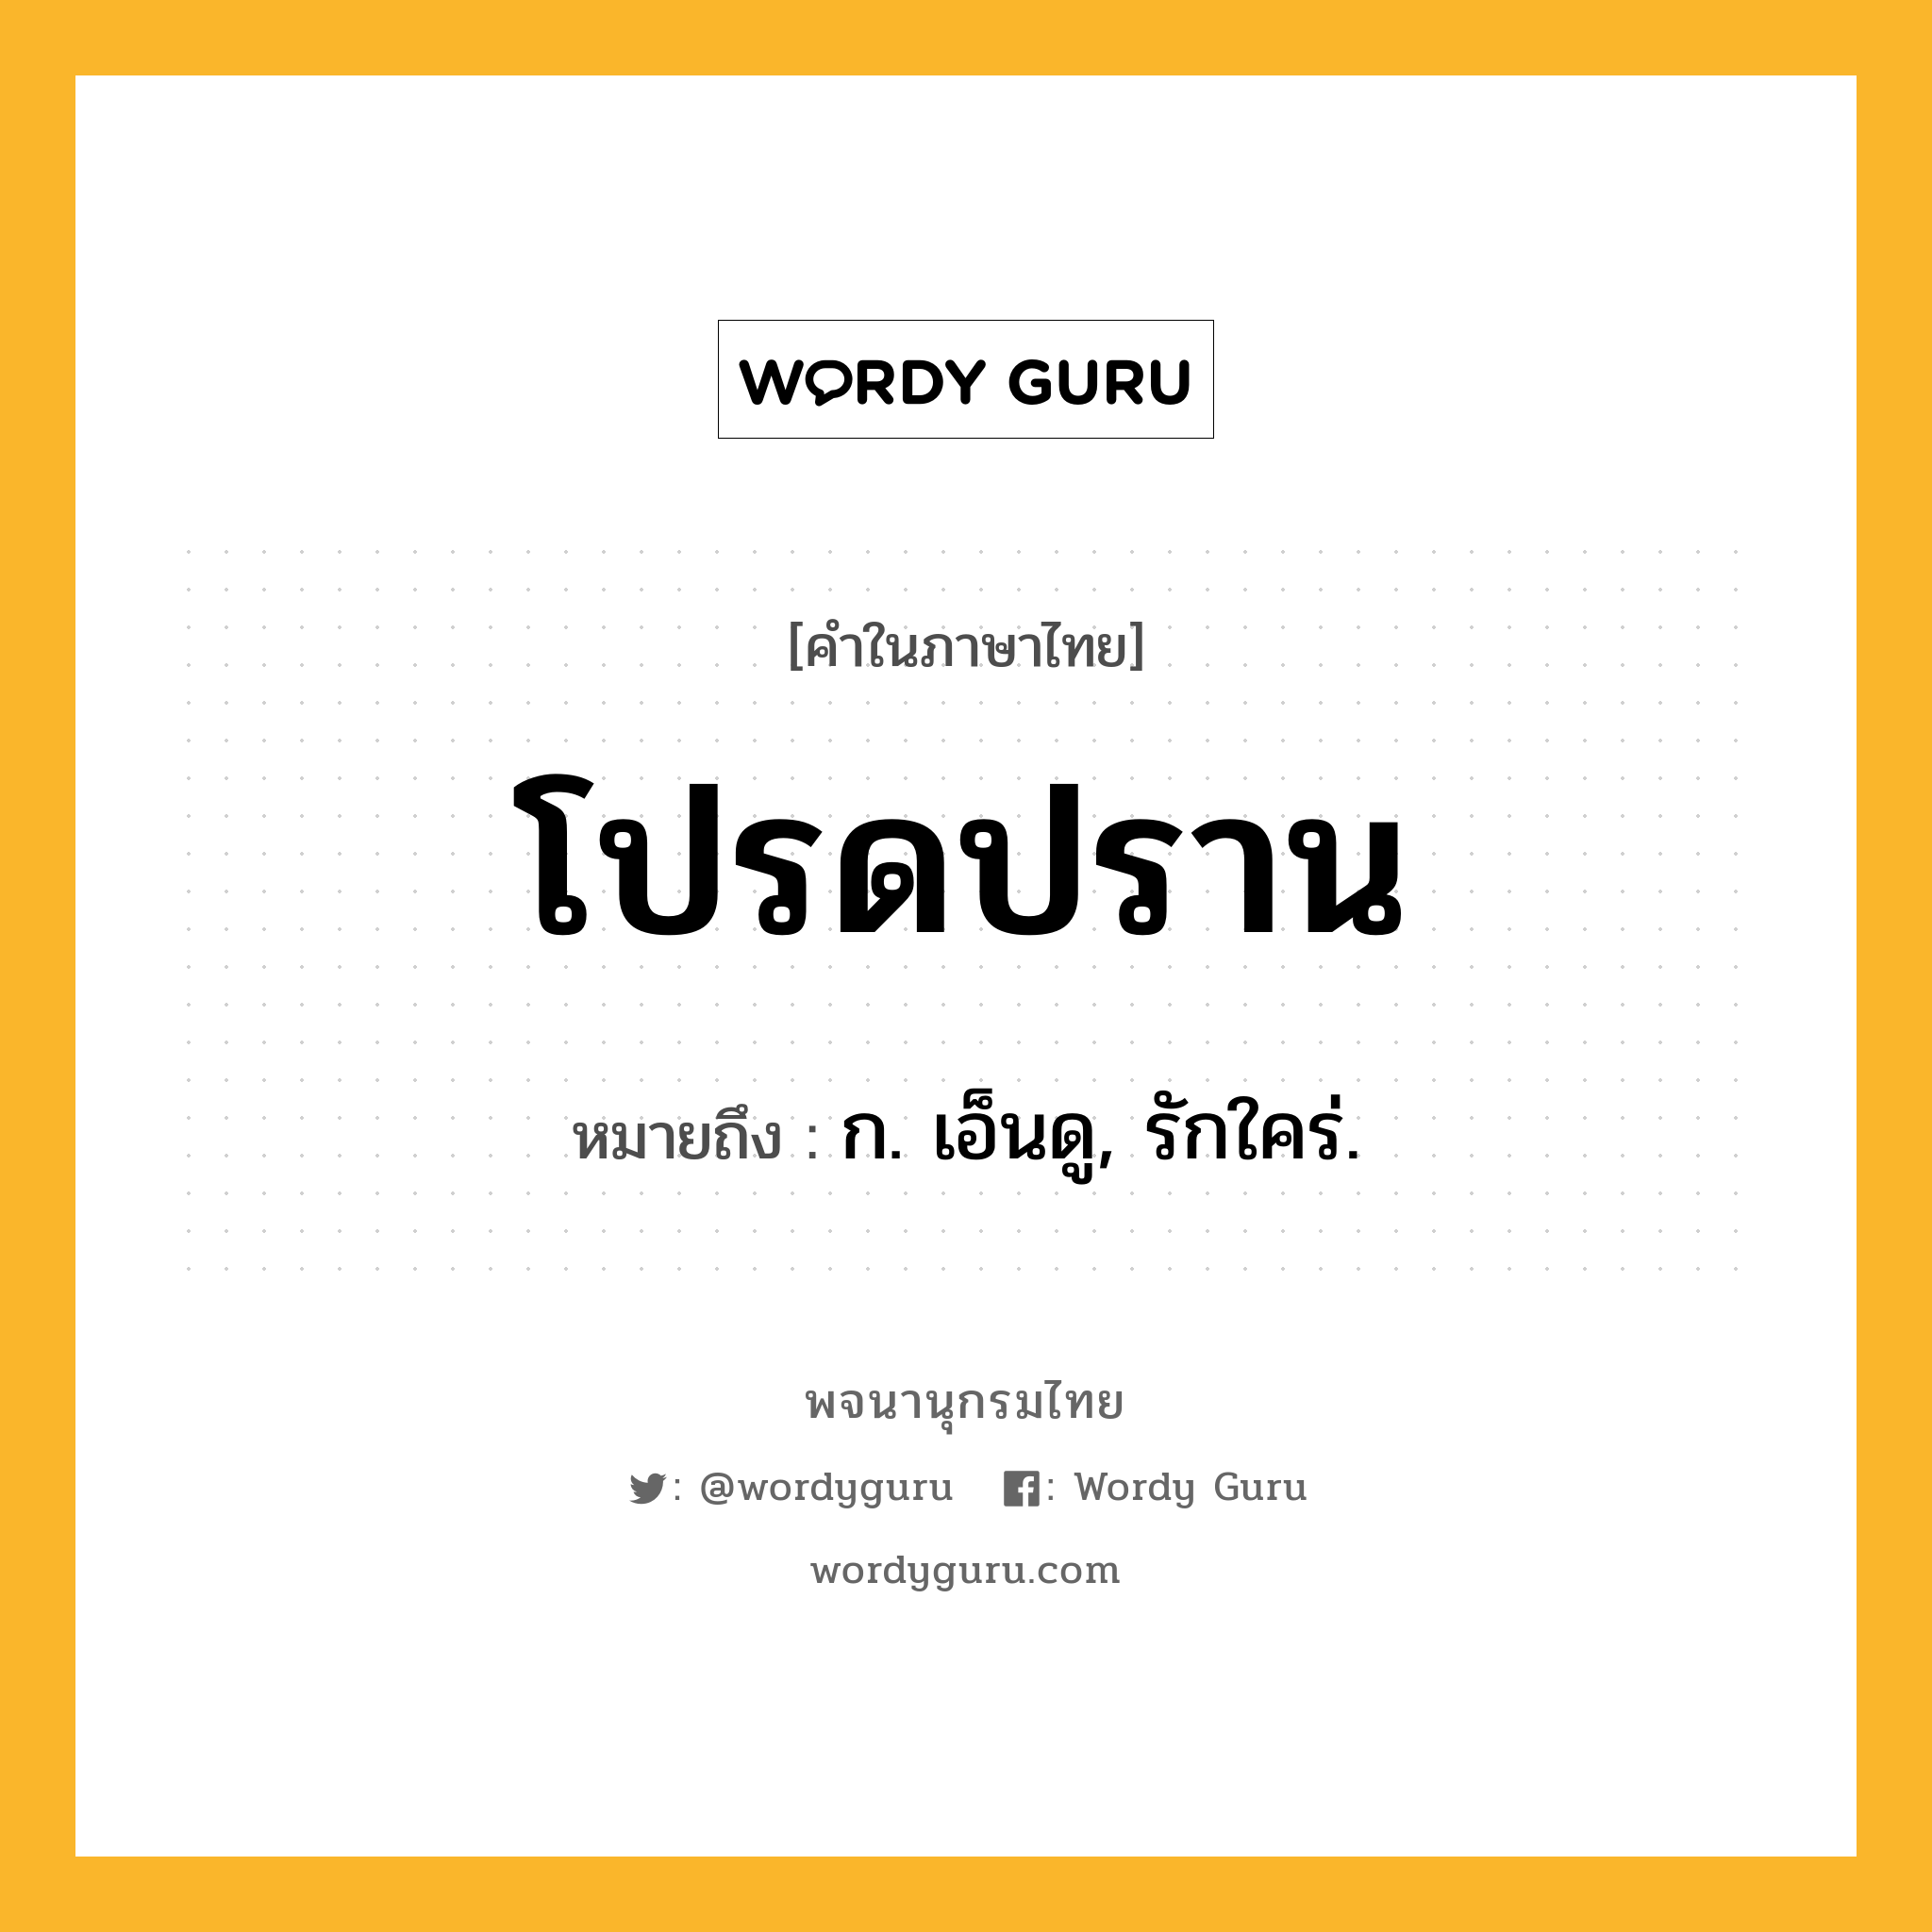 โปรดปราน ความหมาย หมายถึงอะไร?, คำในภาษาไทย โปรดปราน หมายถึง ก. เอ็นดู, รักใคร่.